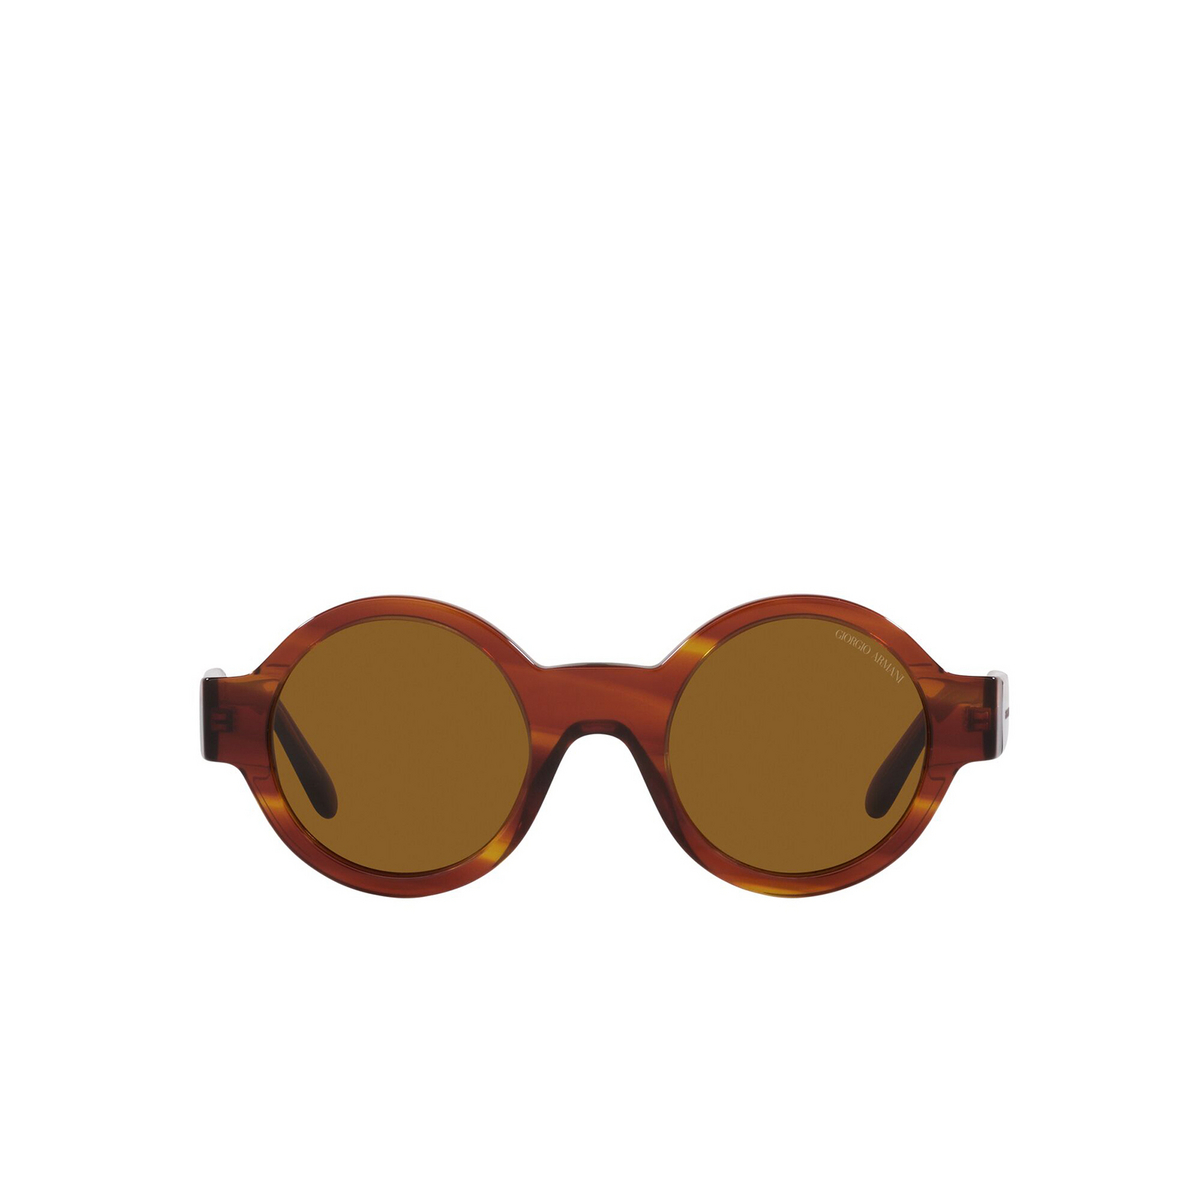 Giorgio Armani® Round Sunglasses: AR903M color Striped Havana 594433 - front view.